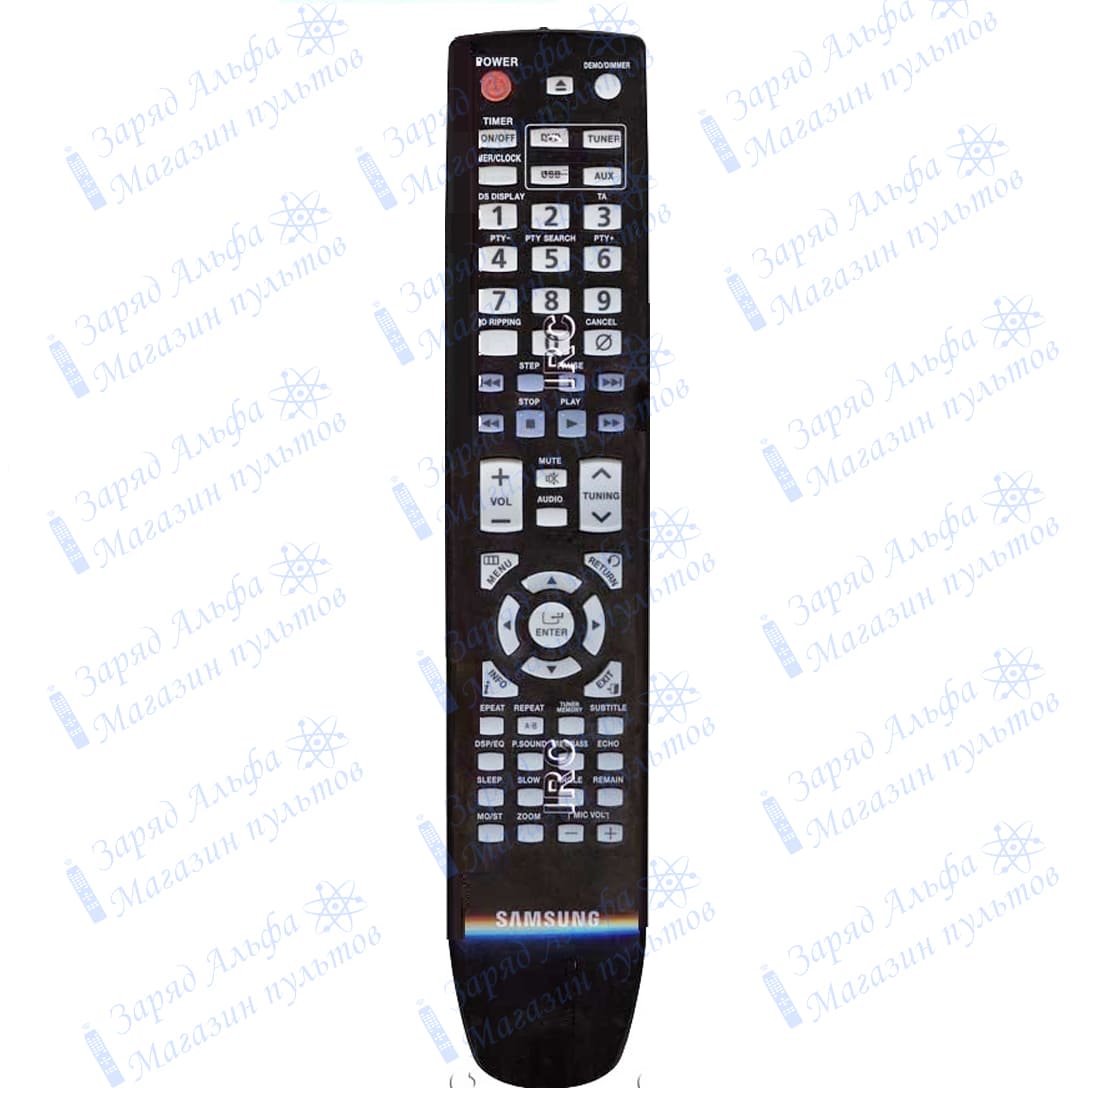 Пульт к Samsung AH59-02146A для домашнего кинотеатра MM-DG25, MM-DG35, MM-DG36, MM-C330D 